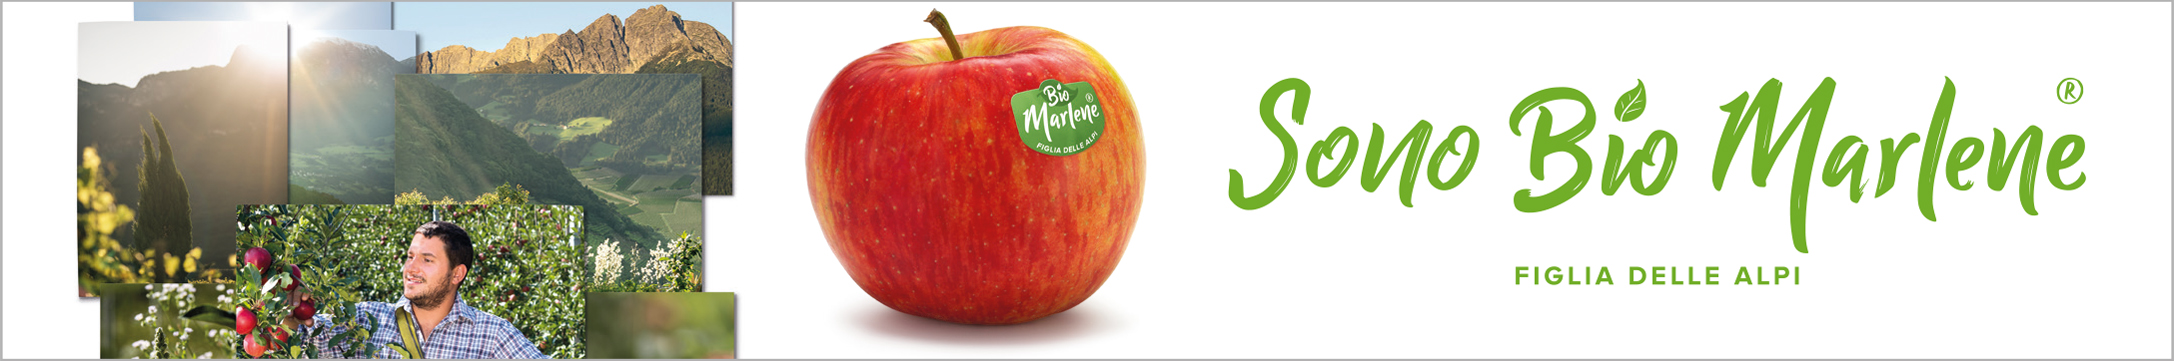 Green Retail  - GoldRush è la mela bio del mese, una delle migliori varietà dell’ampio assortimento bio Marlene 